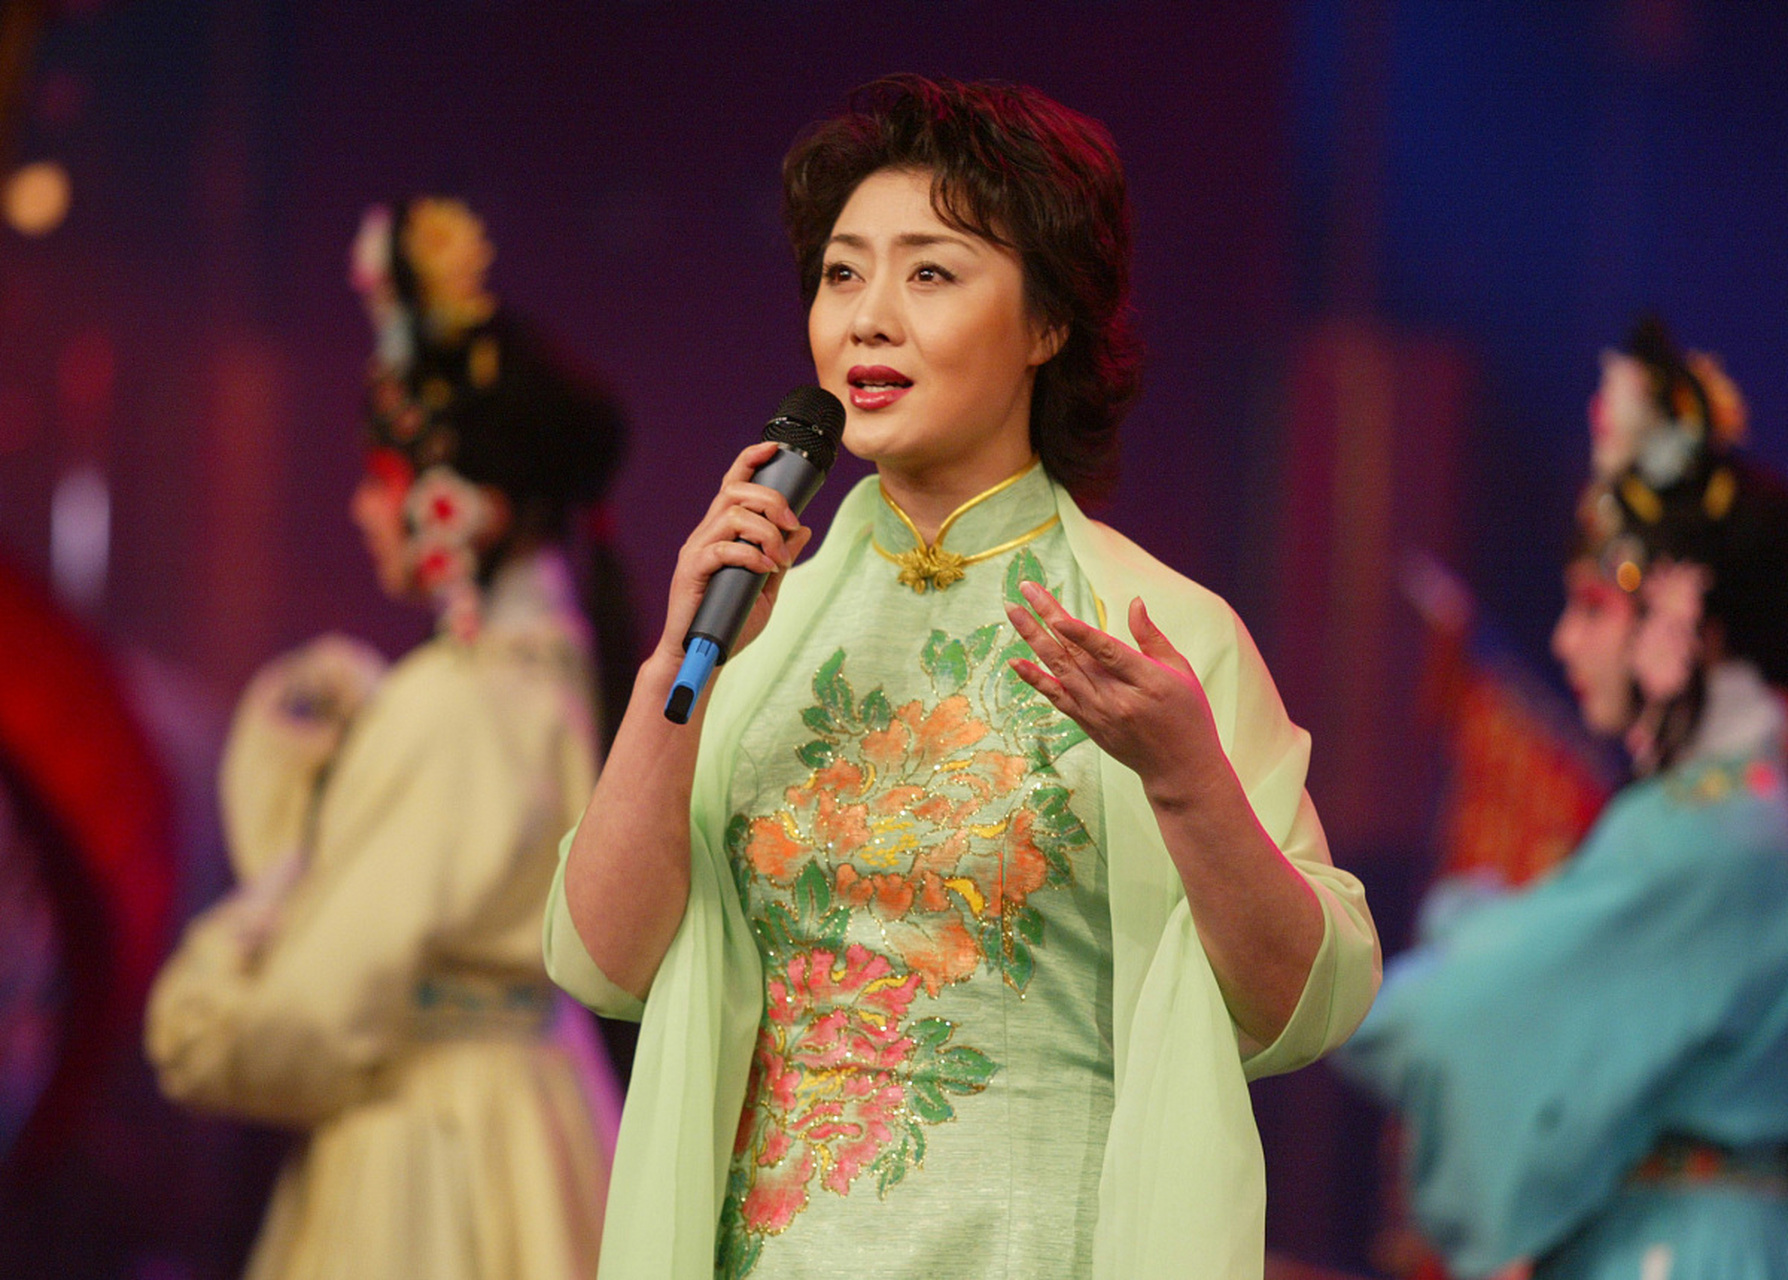 京剧名家李胜素嗓音清亮含蓄,华丽温婉,赢得了海内外许多观众,为京剧